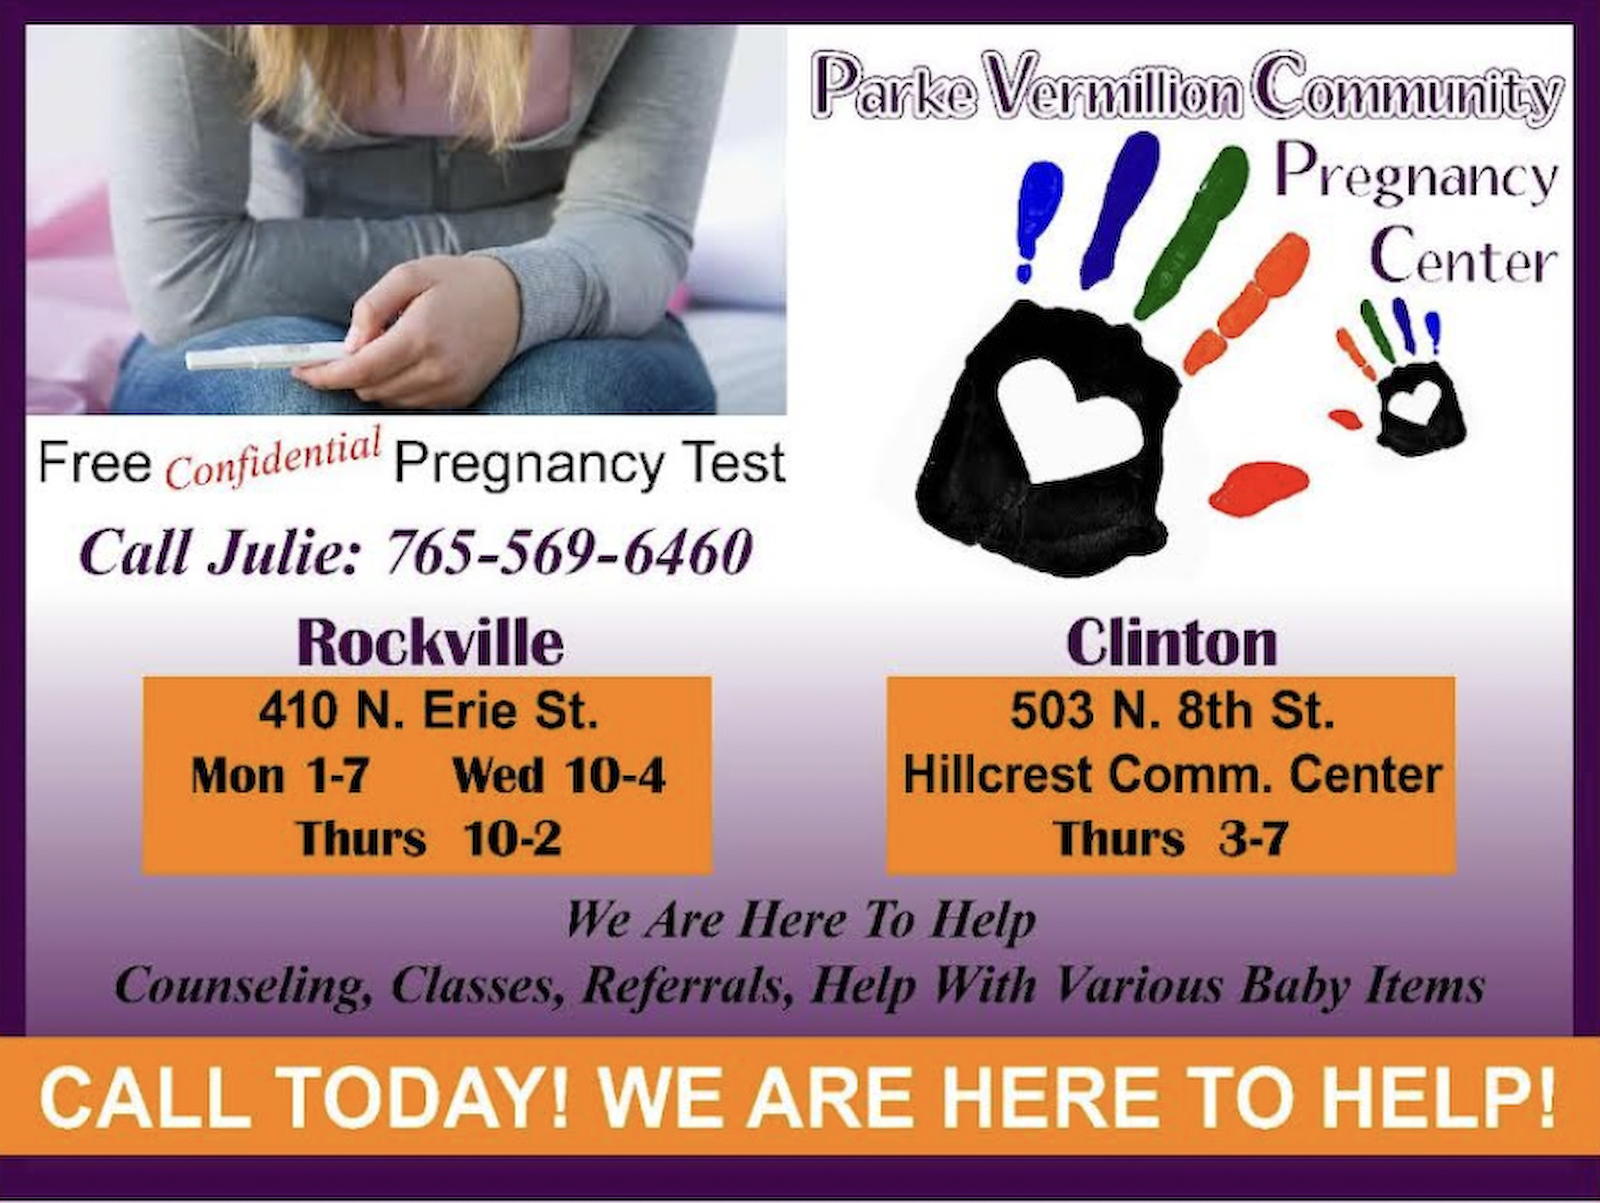 Parke/Vermillion Community Pregnancy Center